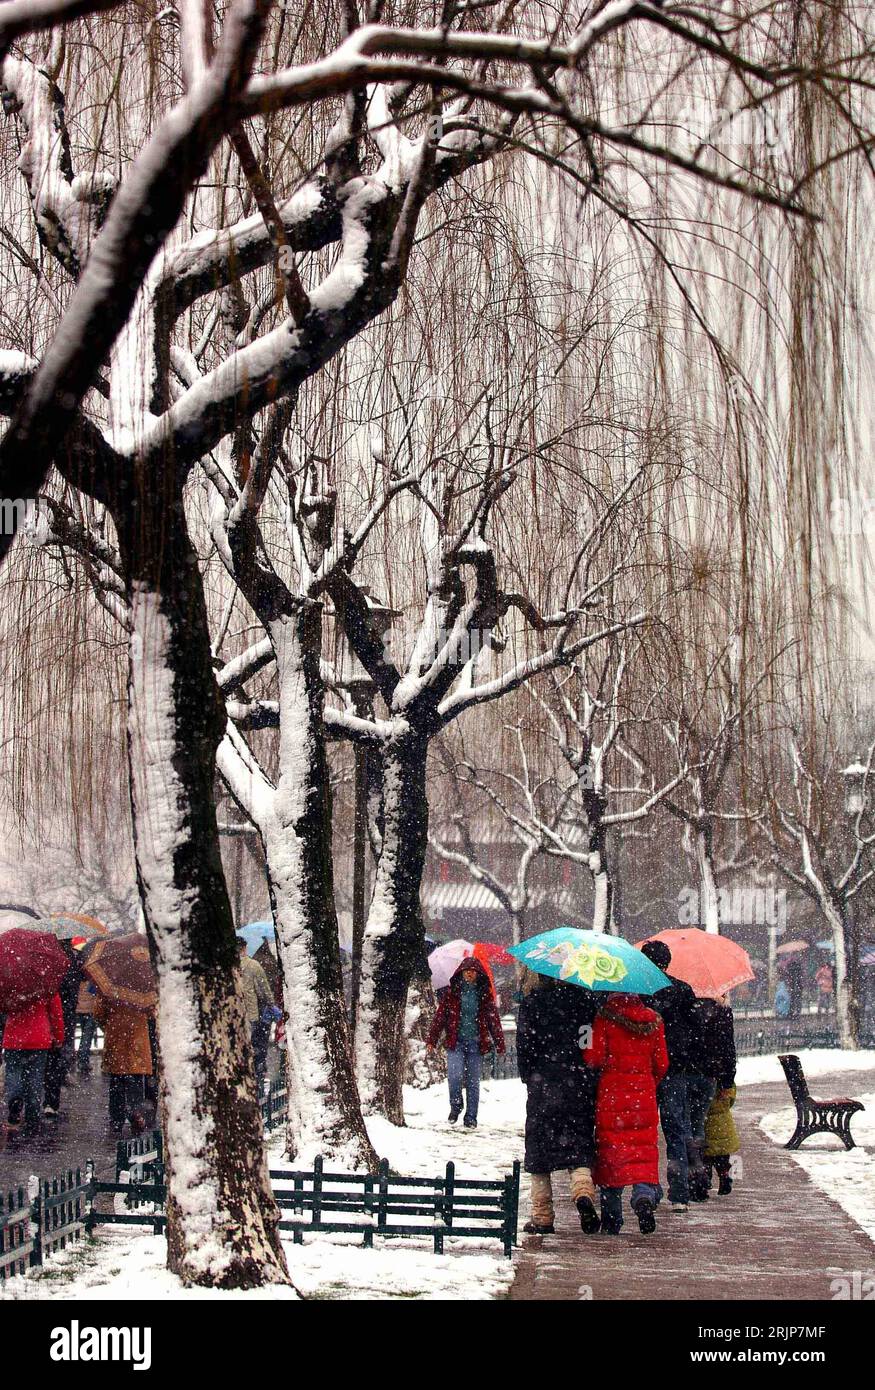 Bildnummer: 51116458 Datum: 18.02.2006 Copyright: imago/Xinhua Fußgänger im Schnee - Hangzhou PUBLICATIONxNOTxINxCHN, Personen; 2006, Hangzhou, Chinesen, cinese, Schirm, Schirme, Regenschirm, Regenschirme; , hoch, Kbdig, Winter, Jahreszeit, totale, Cina, Foto Stock